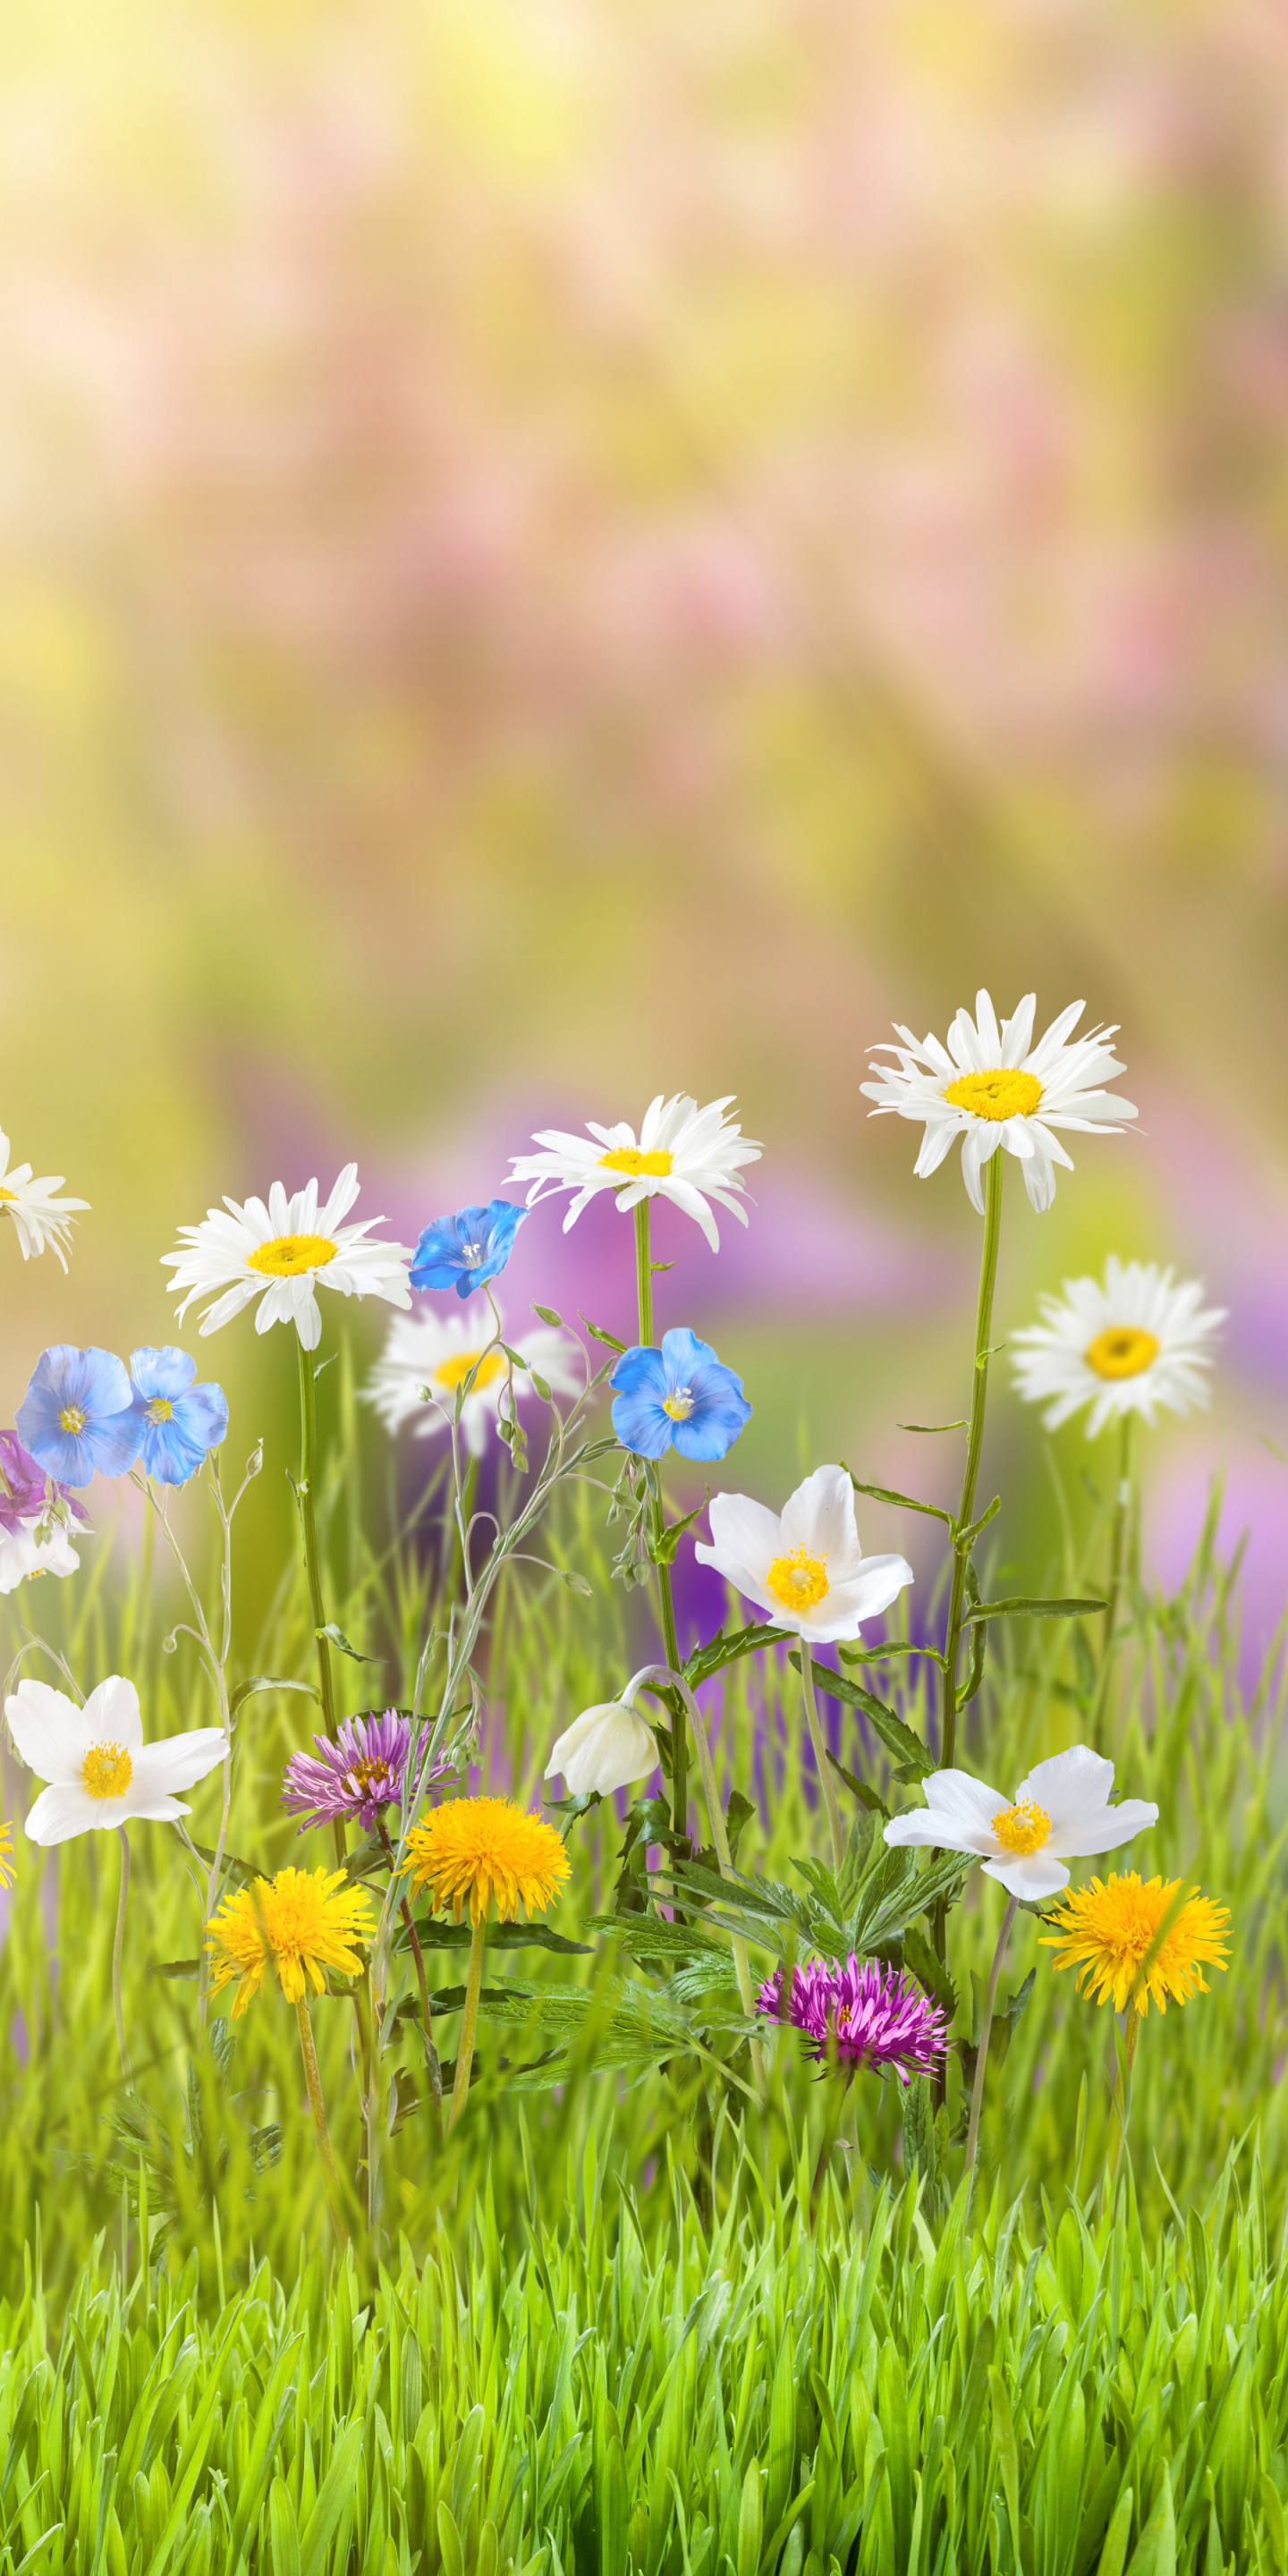 Descarga gratuita de fondo de pantalla para móvil de Naturaleza, Primavera, Flor Amarilla, Flor Blanca, Tierra/naturaleza.